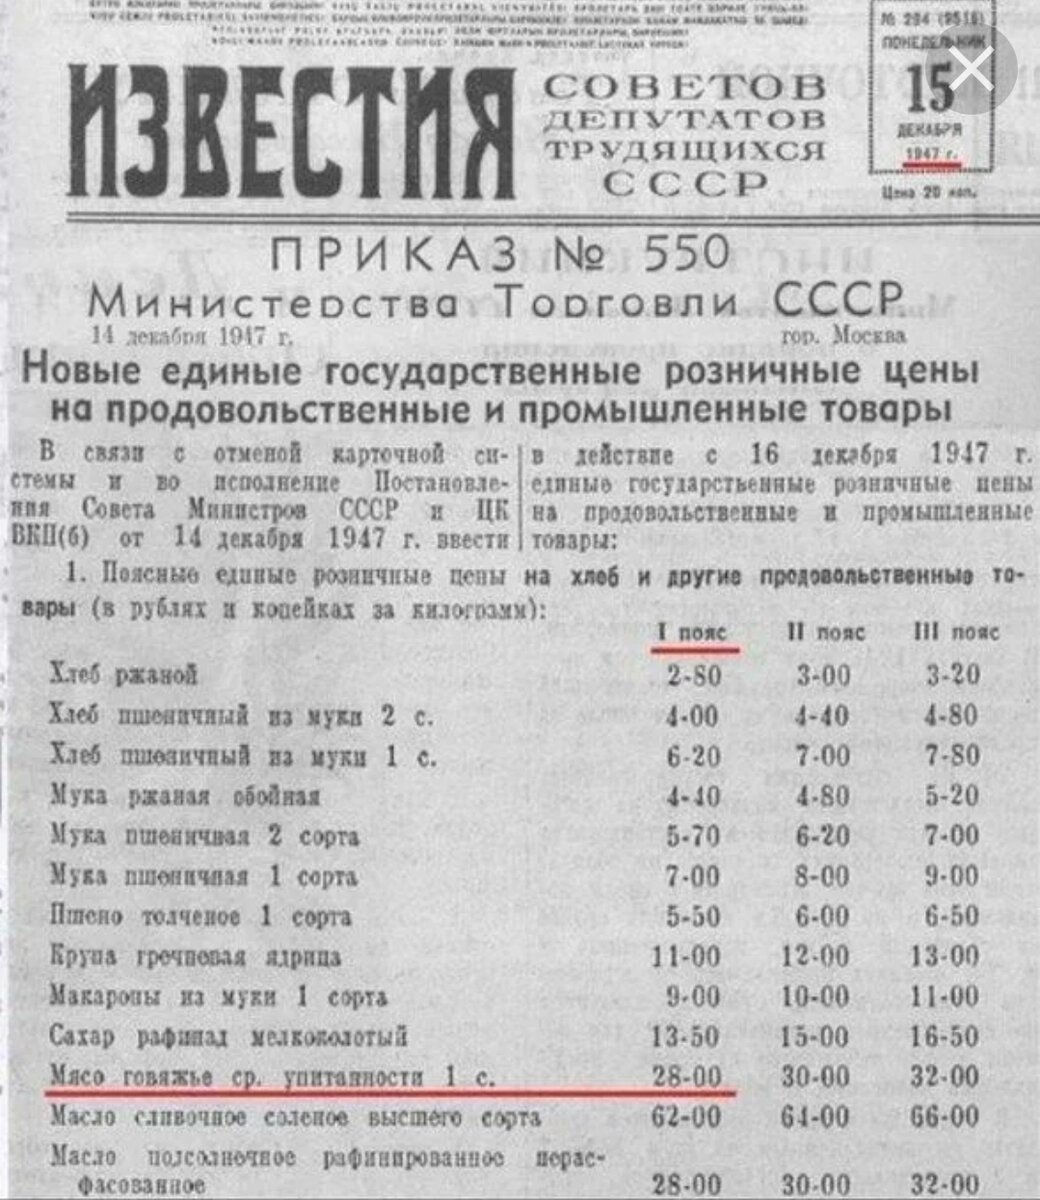 1 апреля снижение цен. Снижение цен при Сталине. Снижение цен в СССР при Сталине. Ежегодное понижение цен в СССР. Сталинское снижение цен 1947-1954 гг.